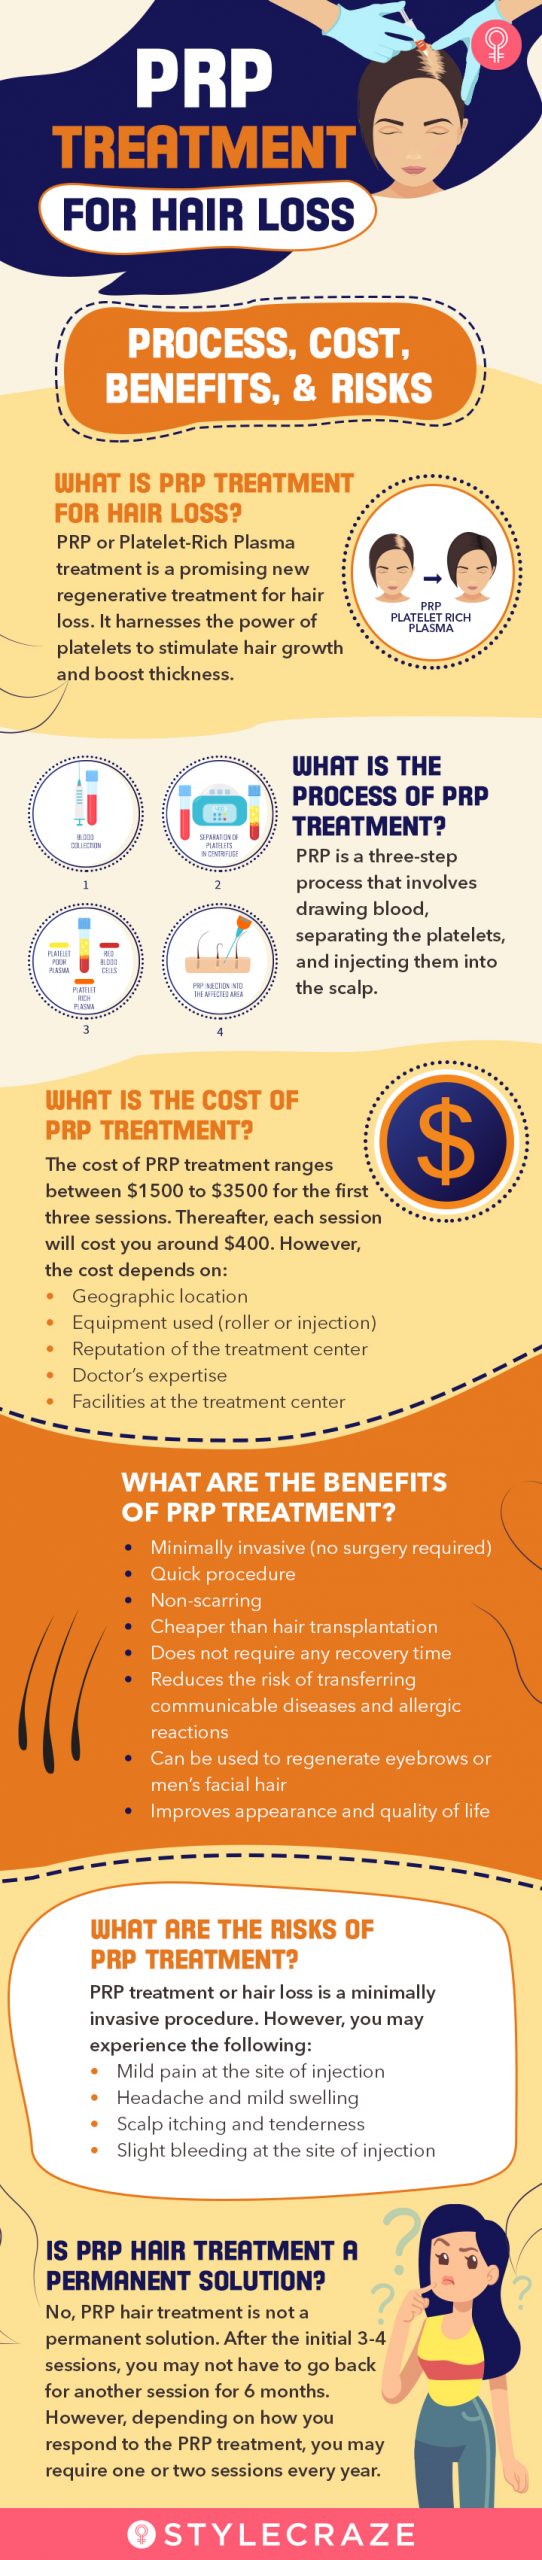 PRP treatment process, cost, benefits, risks